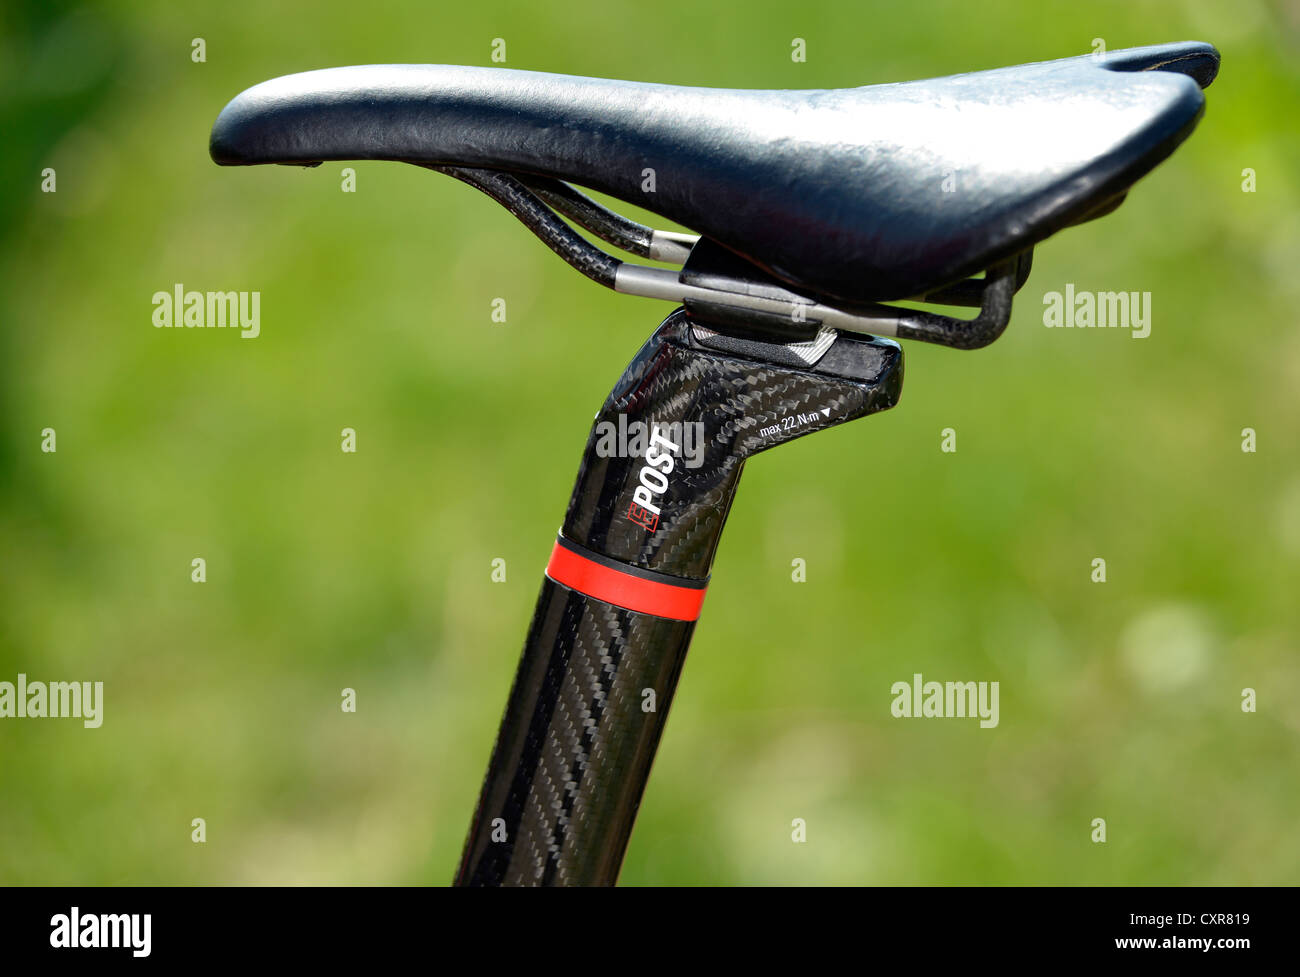 Vista detallada de una alta calidad en bicicletas de carretera de carbono, sillín Foto de stock